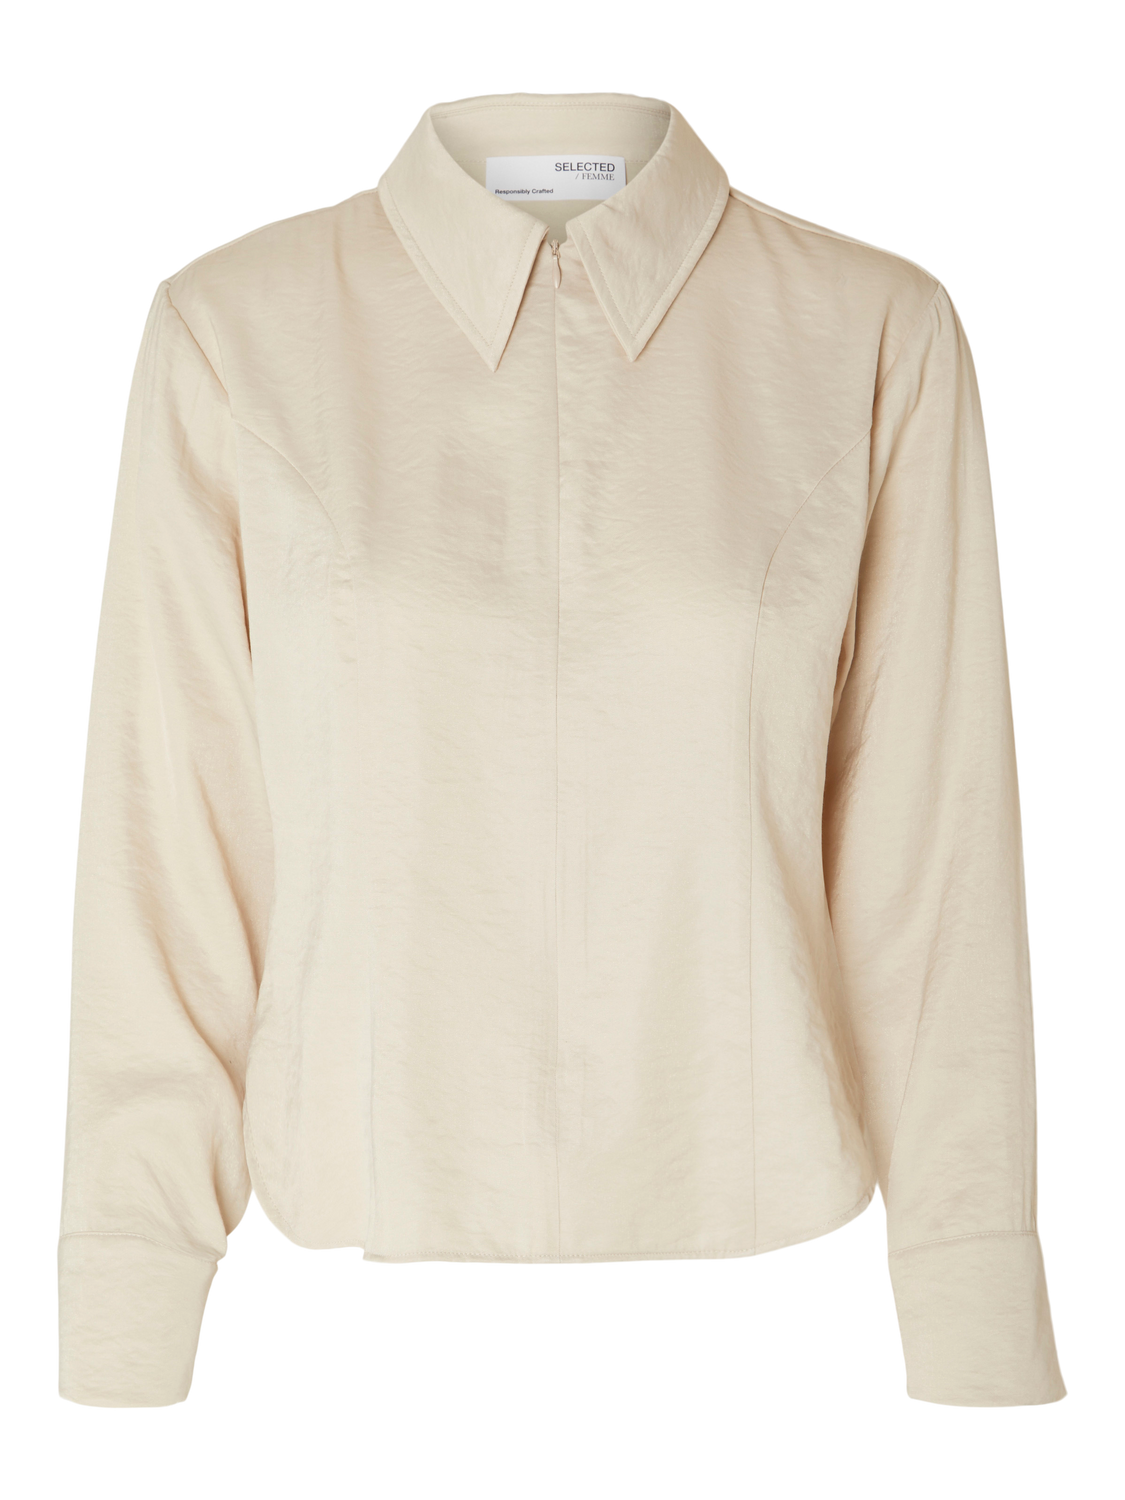 Bonnie skjorte - Beige/ Sandshell